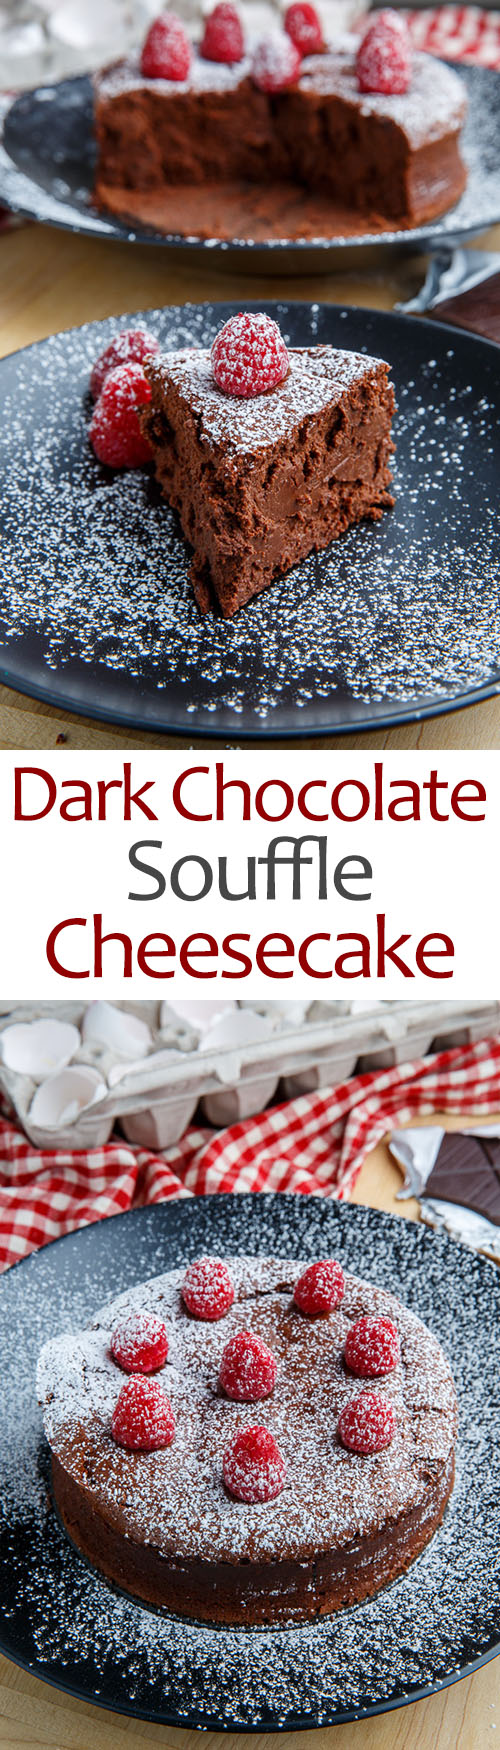 Dark Chocolate Souffle Cheesecake